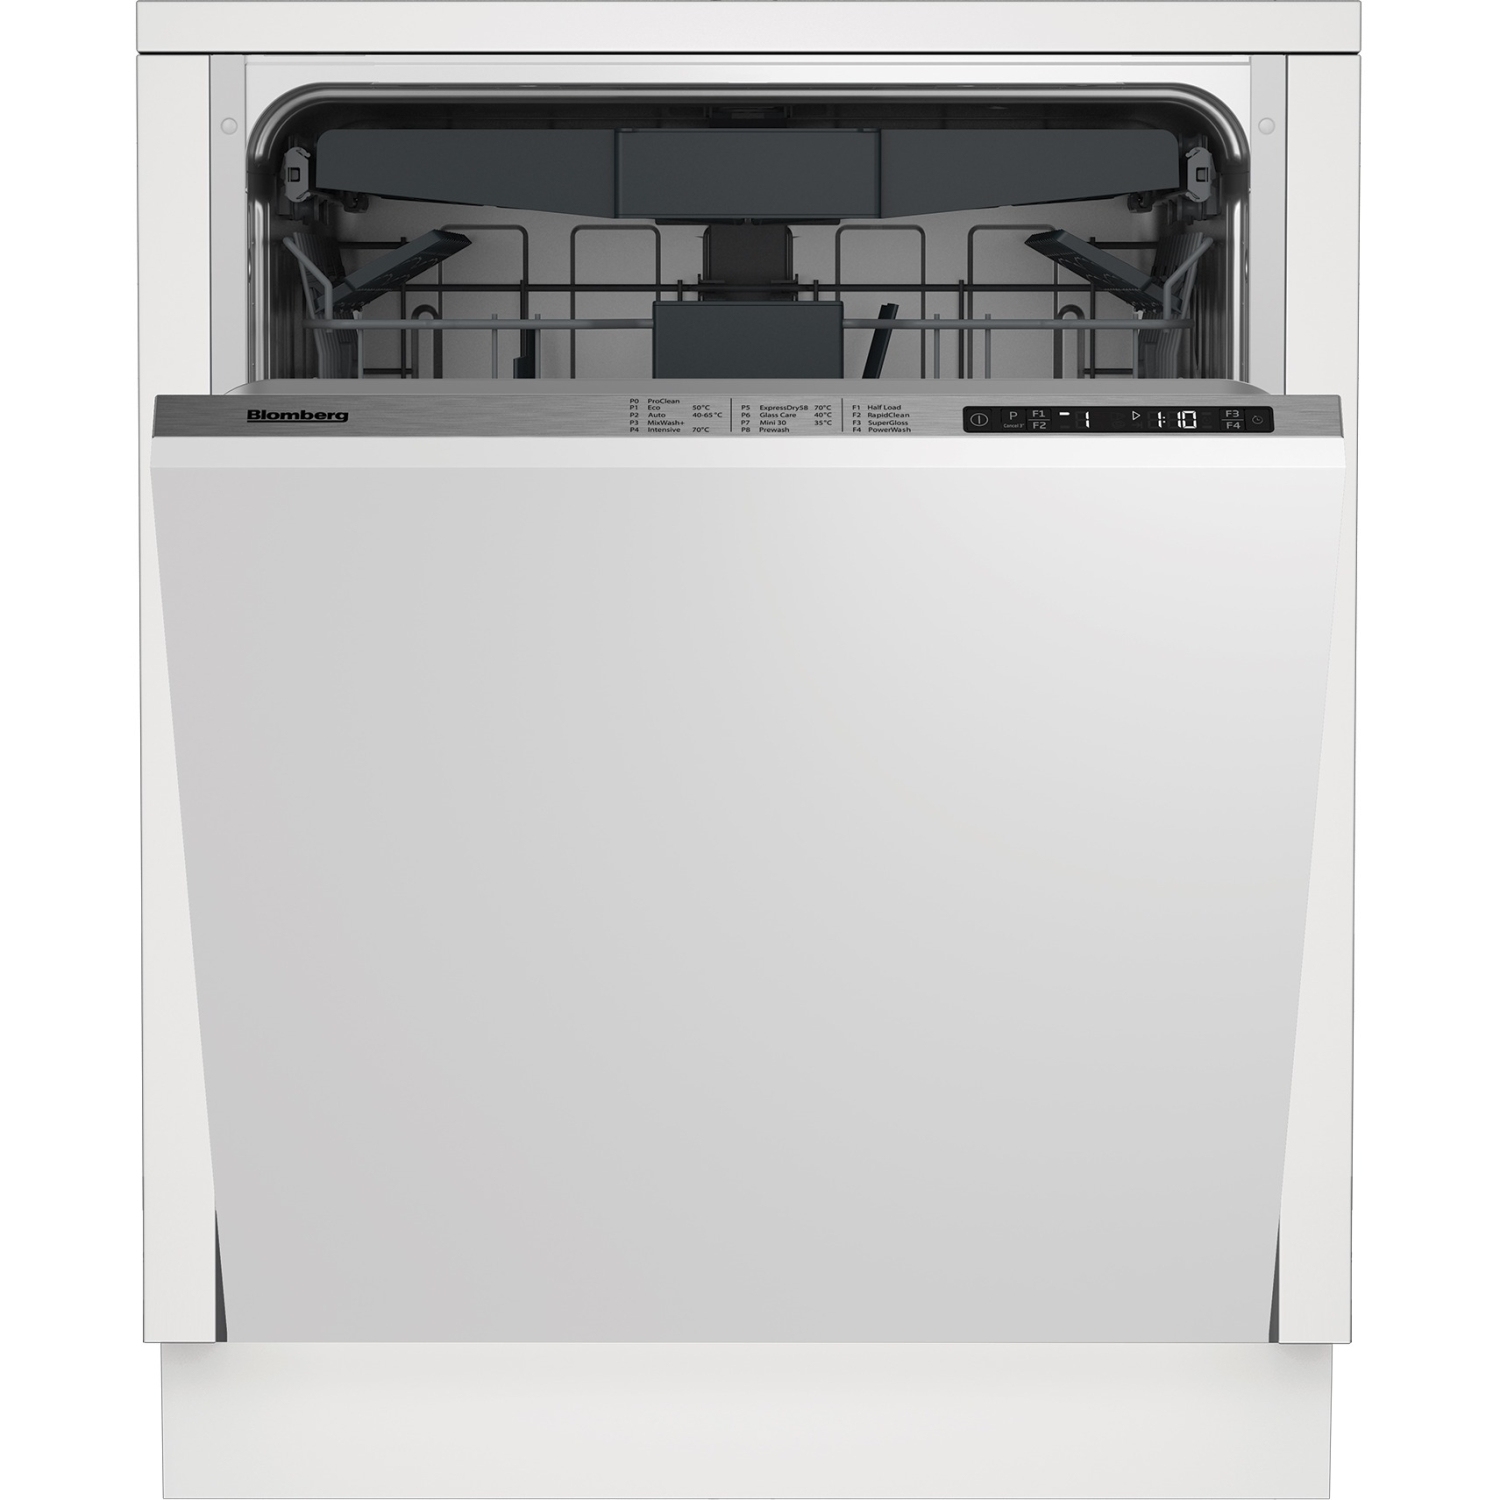 Blomberg LDV42244 Full Size Integrated Dishwasher - 14 Place Settings - 2